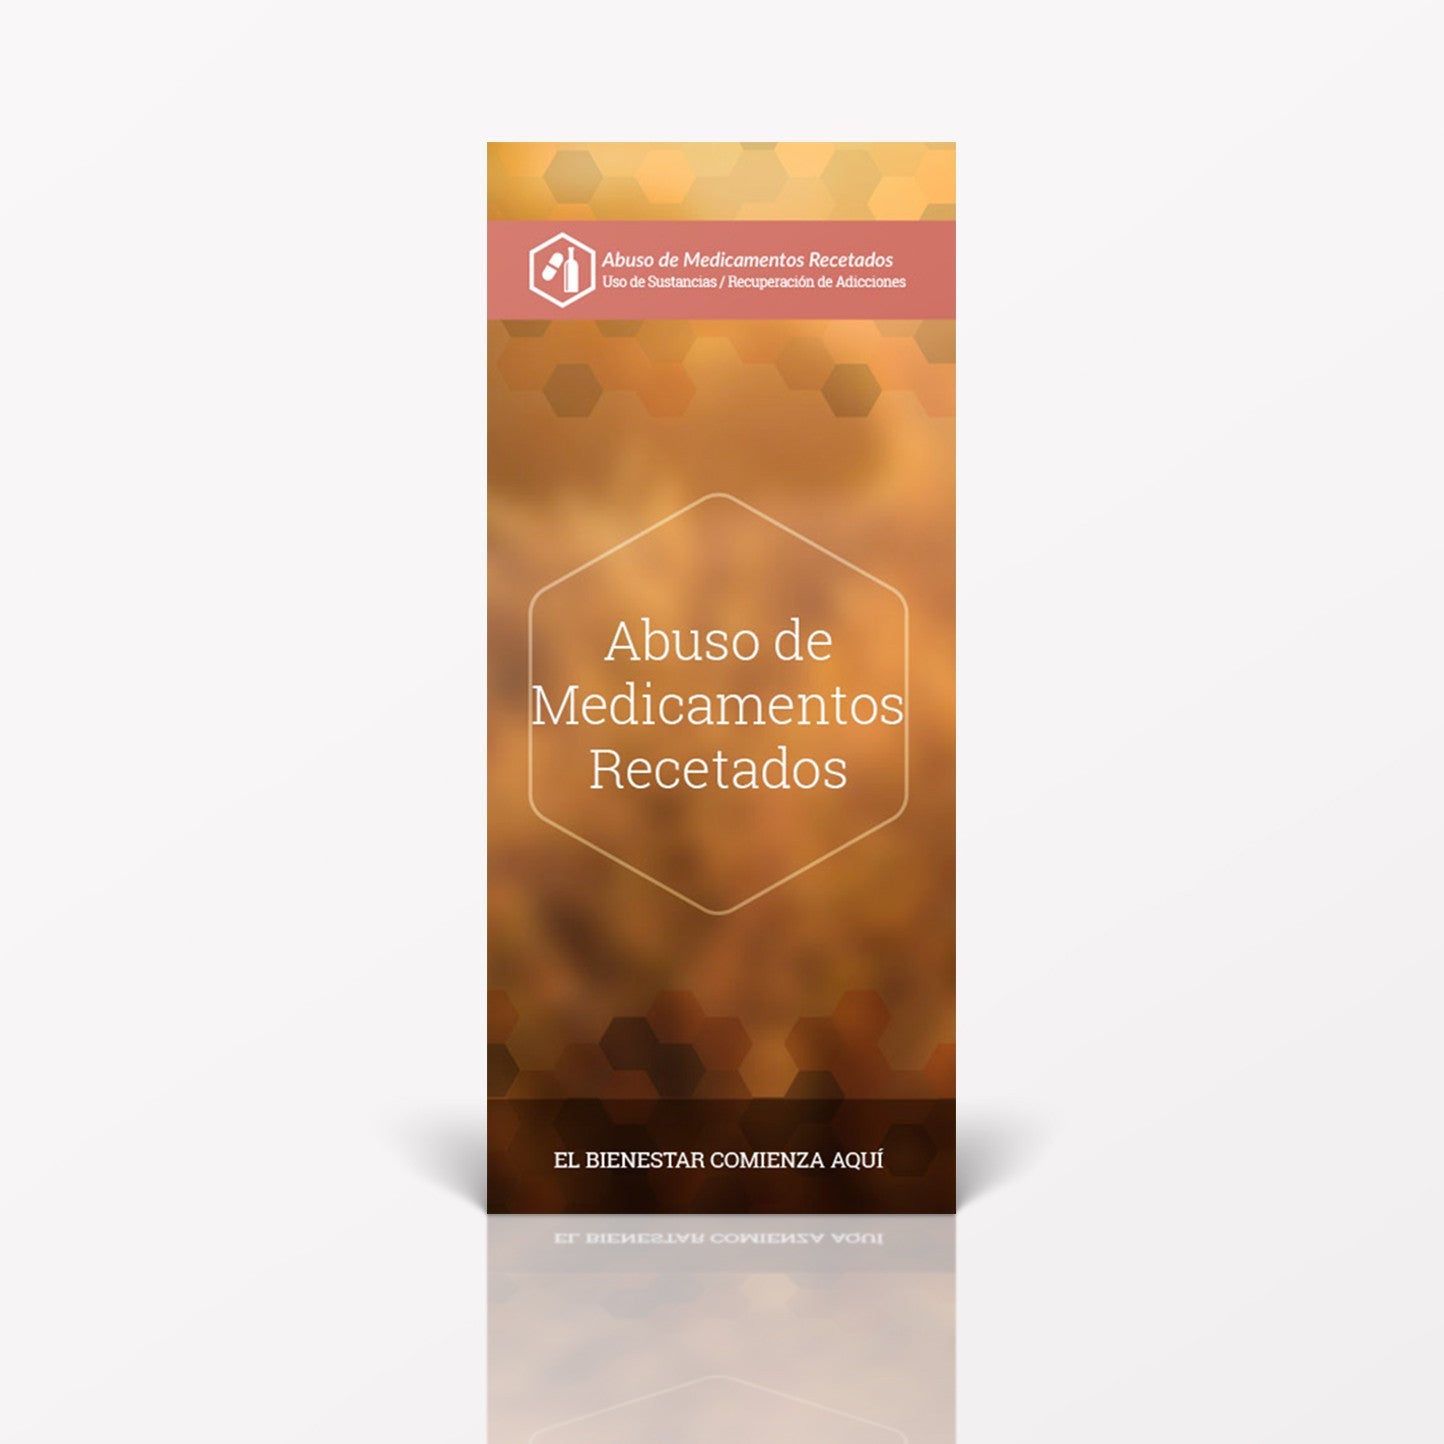 Spanish pamphlet on Prescription Drug Abuse